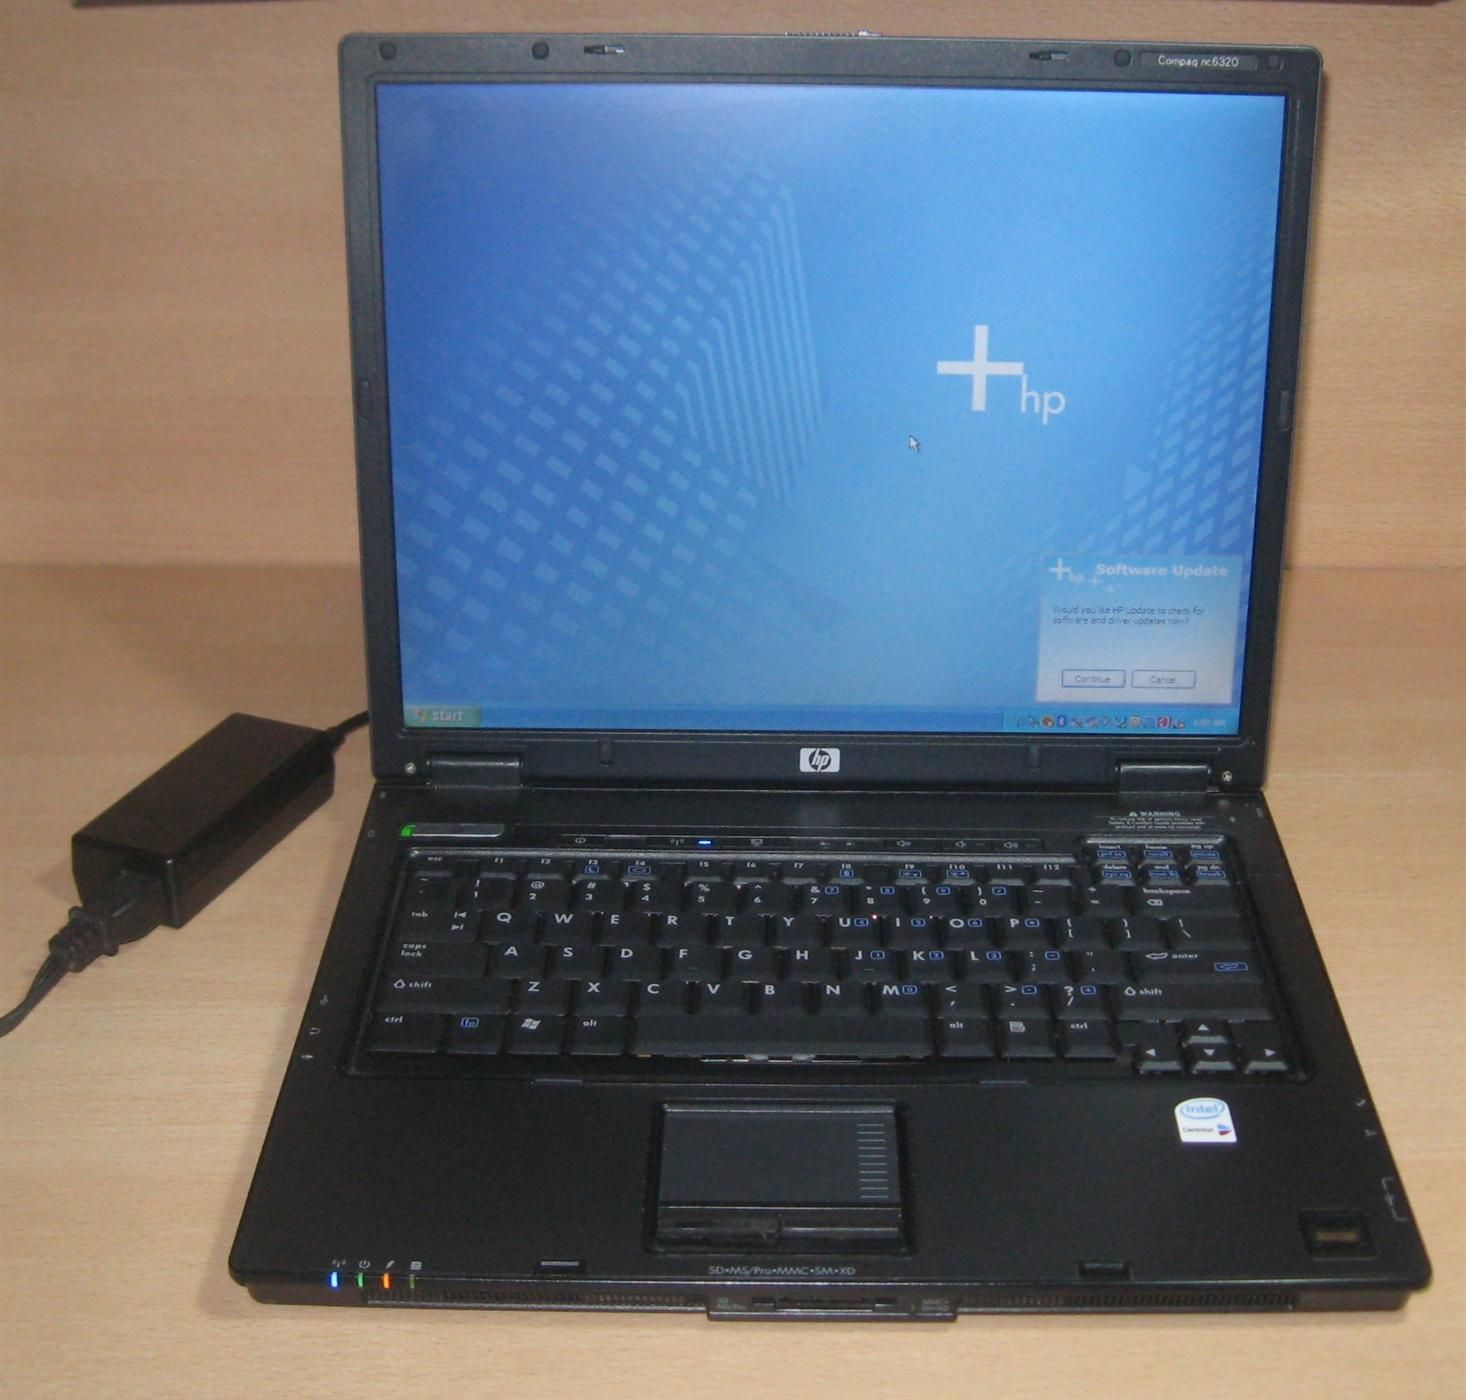 HP NC6320 Laptop Intel T1300 1 66GHz 40GB 1GB RAM CDRW DVD Win XP